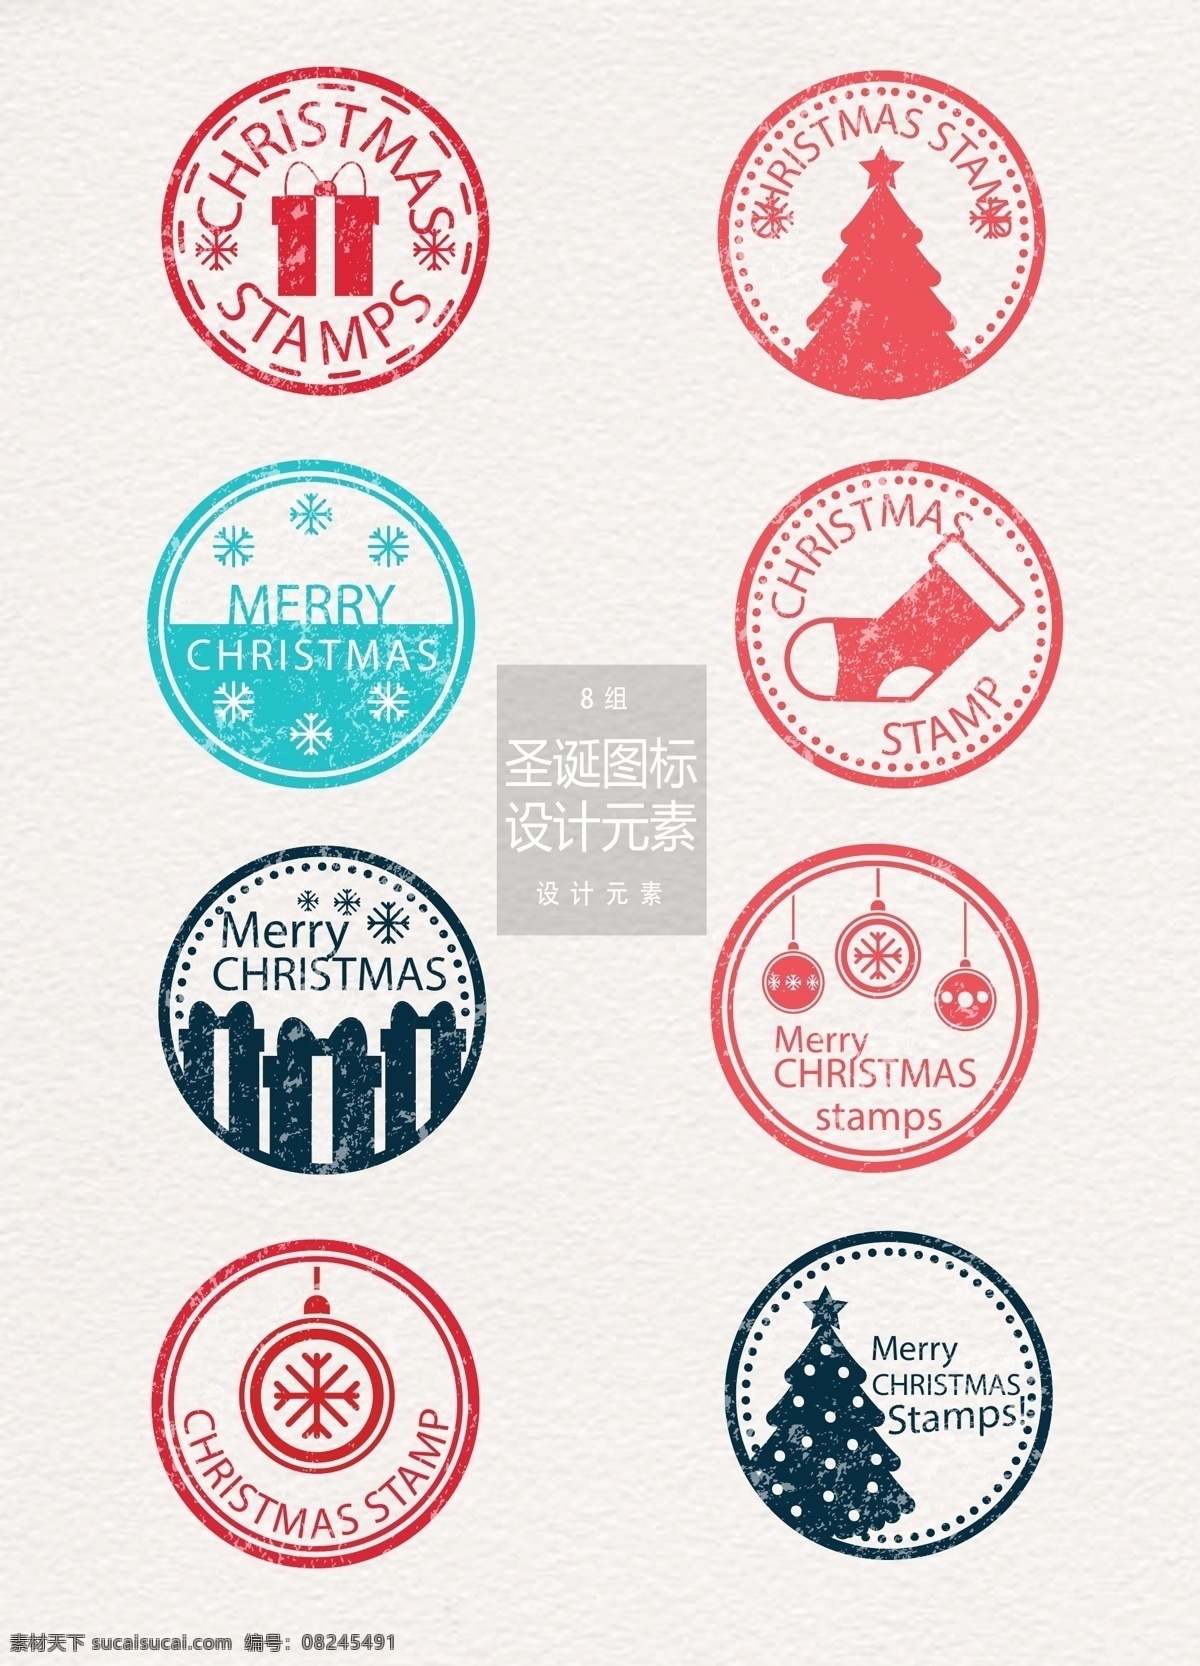 圣诞 印章 图标 元素 圣诞节 设计元素 圣诞树 袜子 雪花 圣诞印章 圣诞图标 圣诞礼物